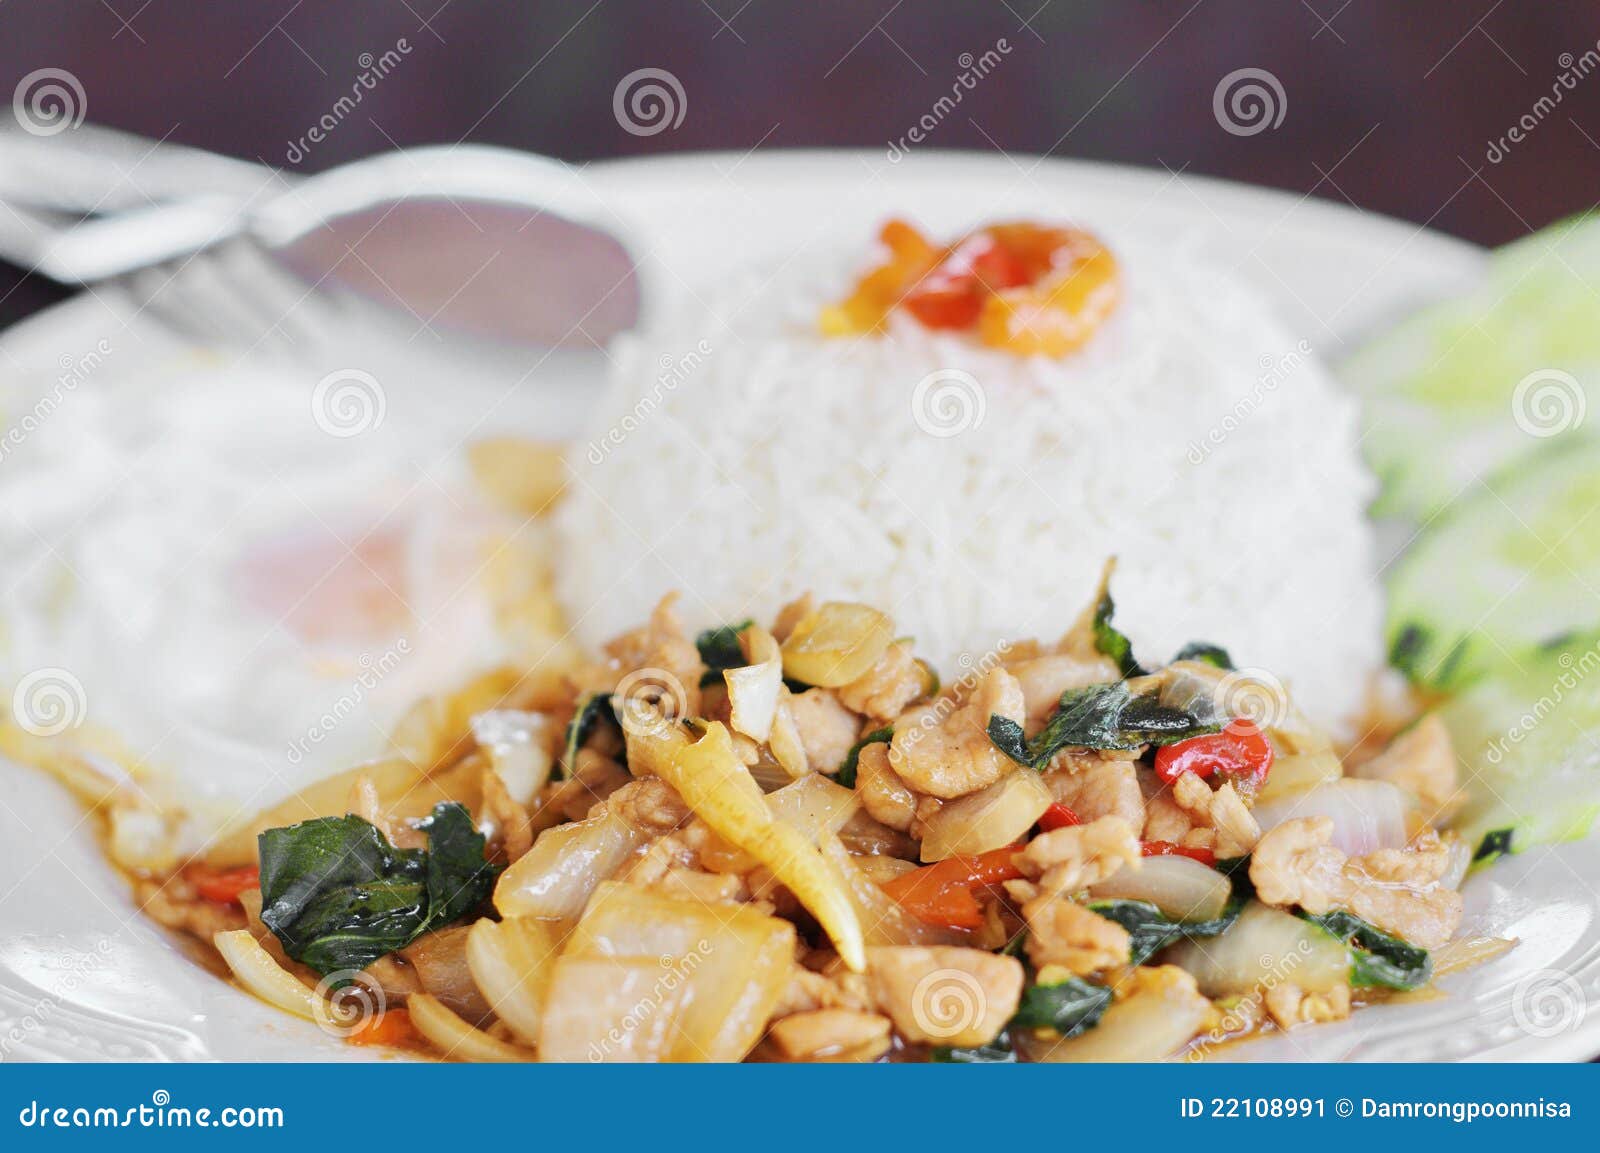 thai food, kapao moo